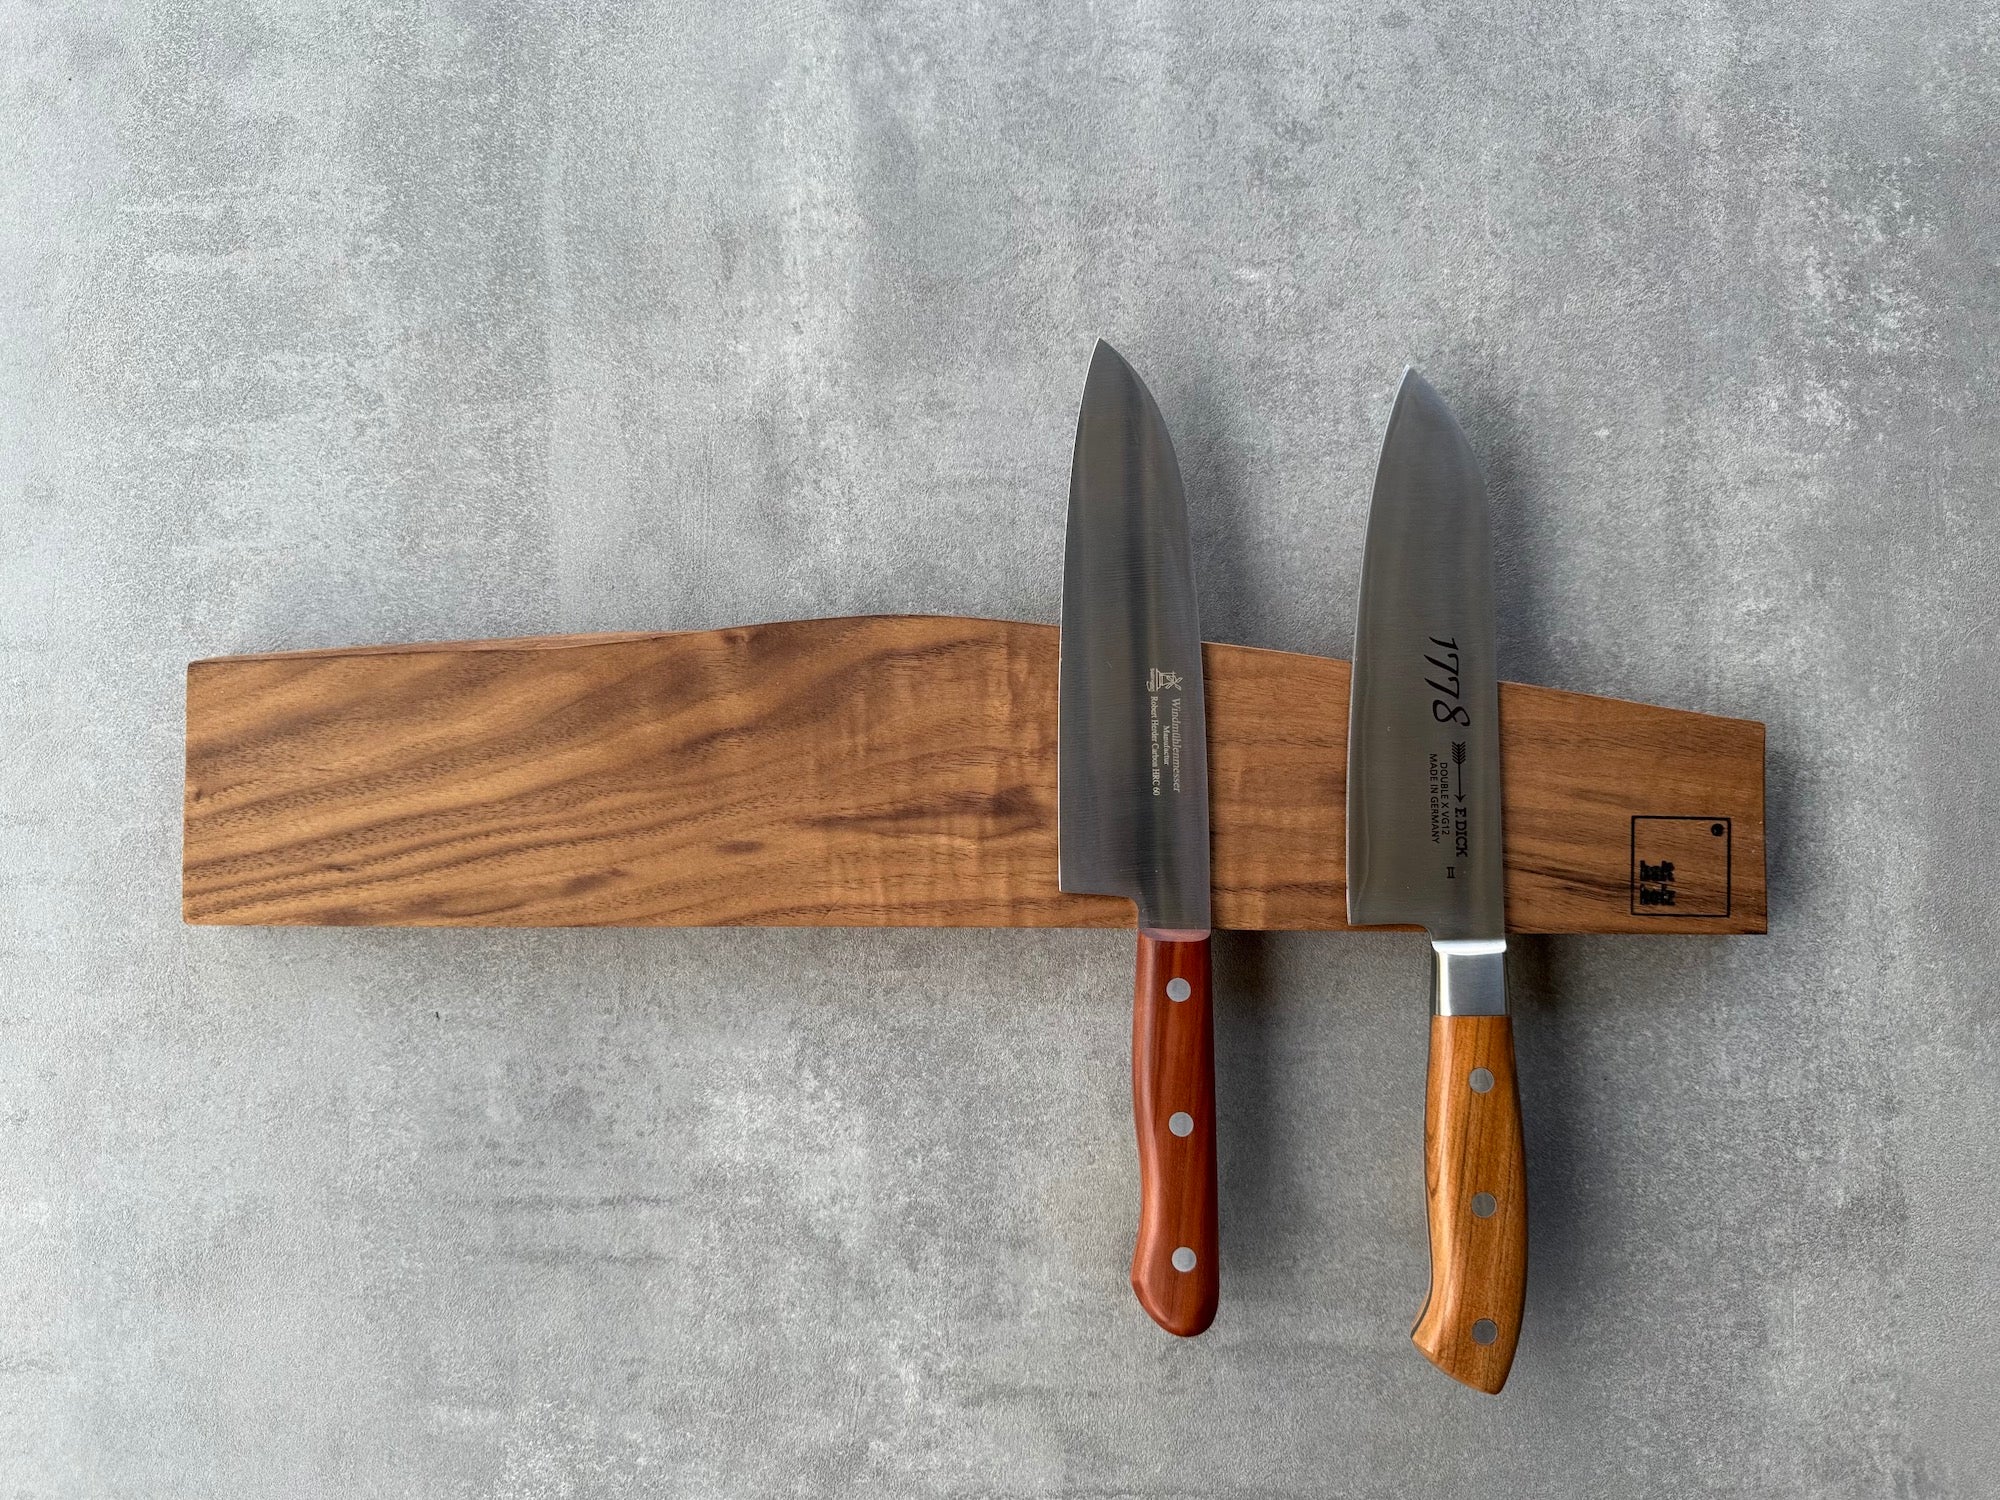 Magnetischer Messerhalter aus Nussbaum für die Wand für 7 Messer. Dekoriert mit zwei Dick 1778 Kochmesser.